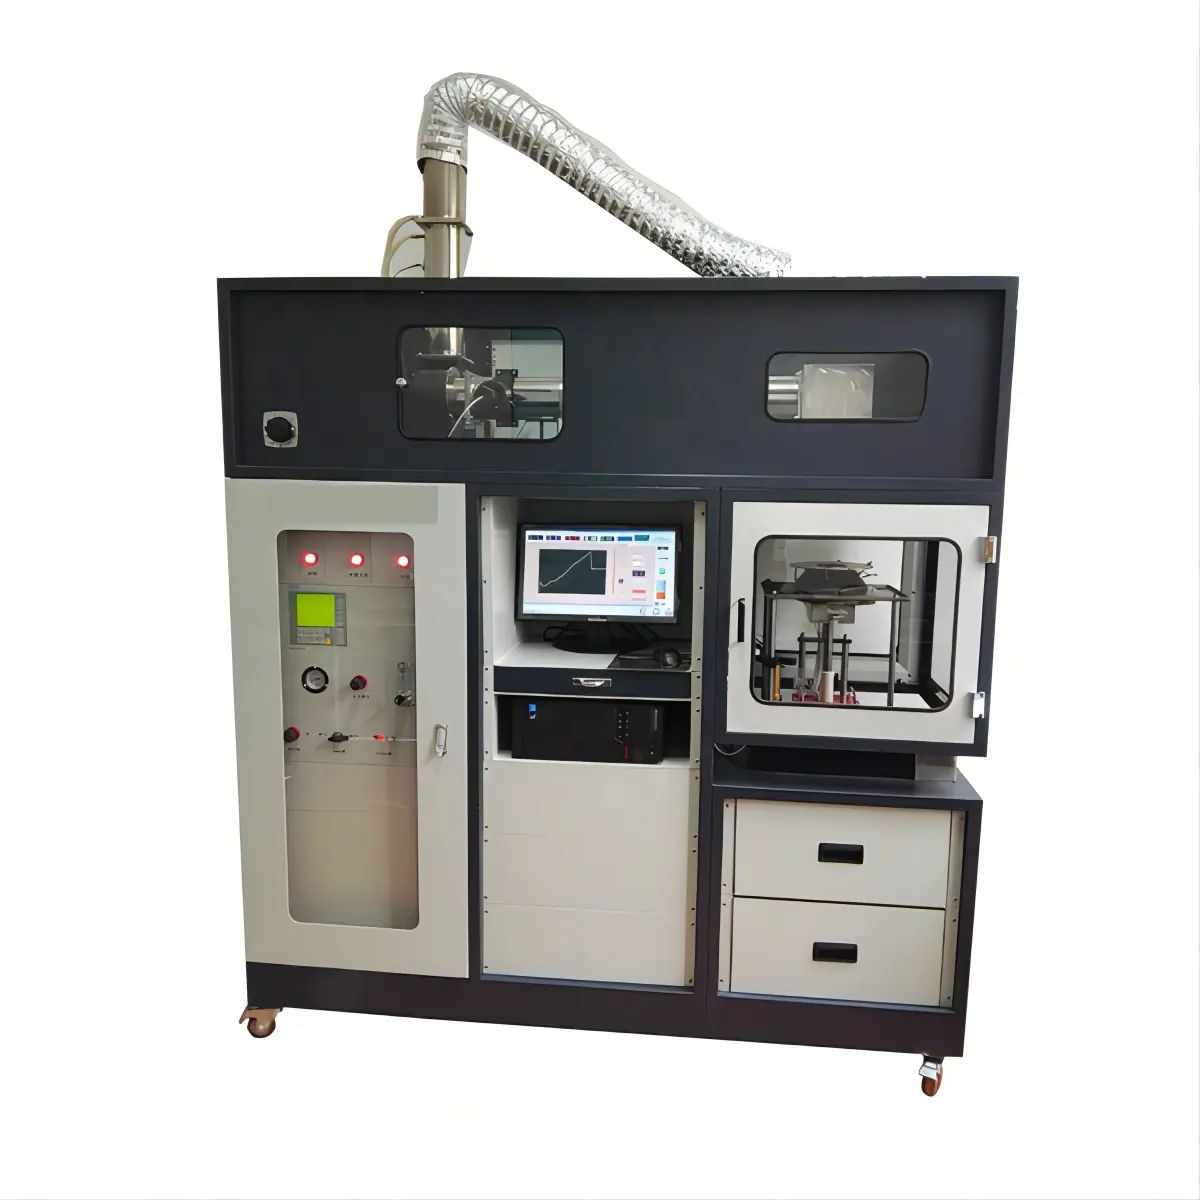 ISO 5660 ASTM E1354 cono calorimetro tester analizzatore misuratore di calorimetro cono per calore e fumo visibile tassi di rilascio